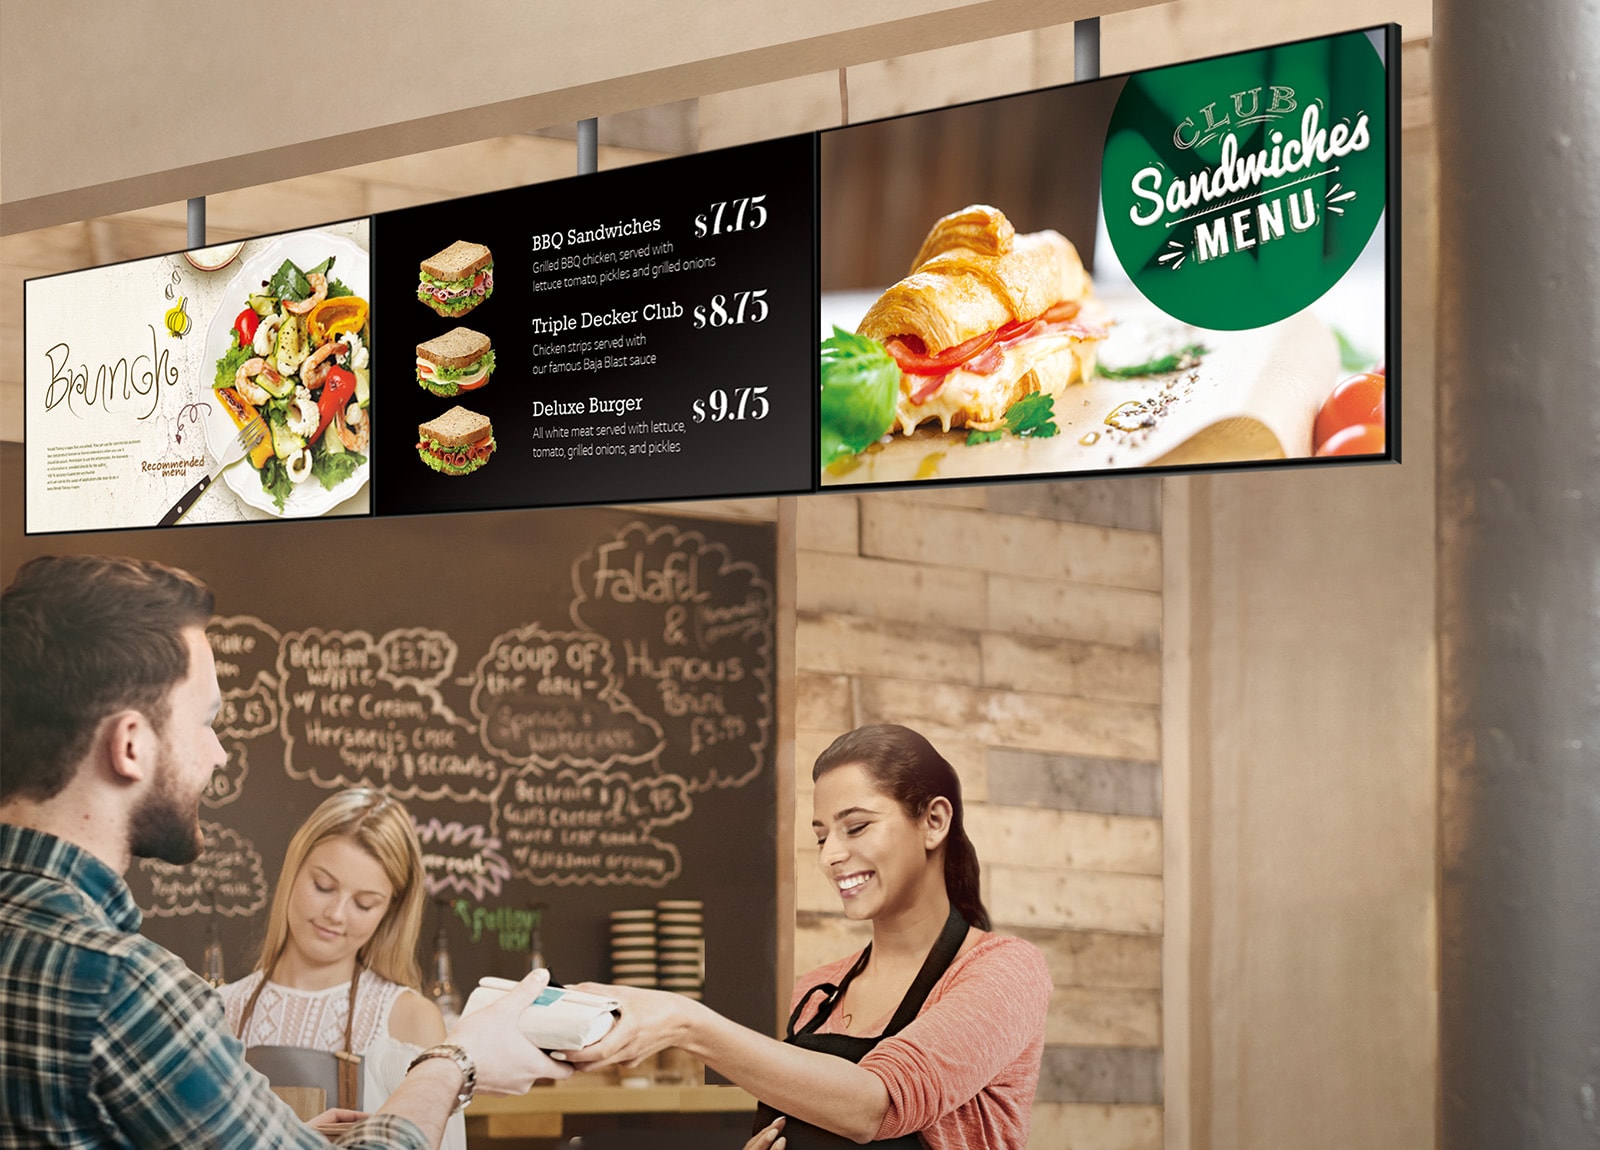 Персонал в сэндвич-магазине вручает бутерброд покупателю. Серия SM5J, на которой изображена доска меню, установлена над ними, отображающая сэндвич-меню с рекламными предложениями на поздний завтрак.